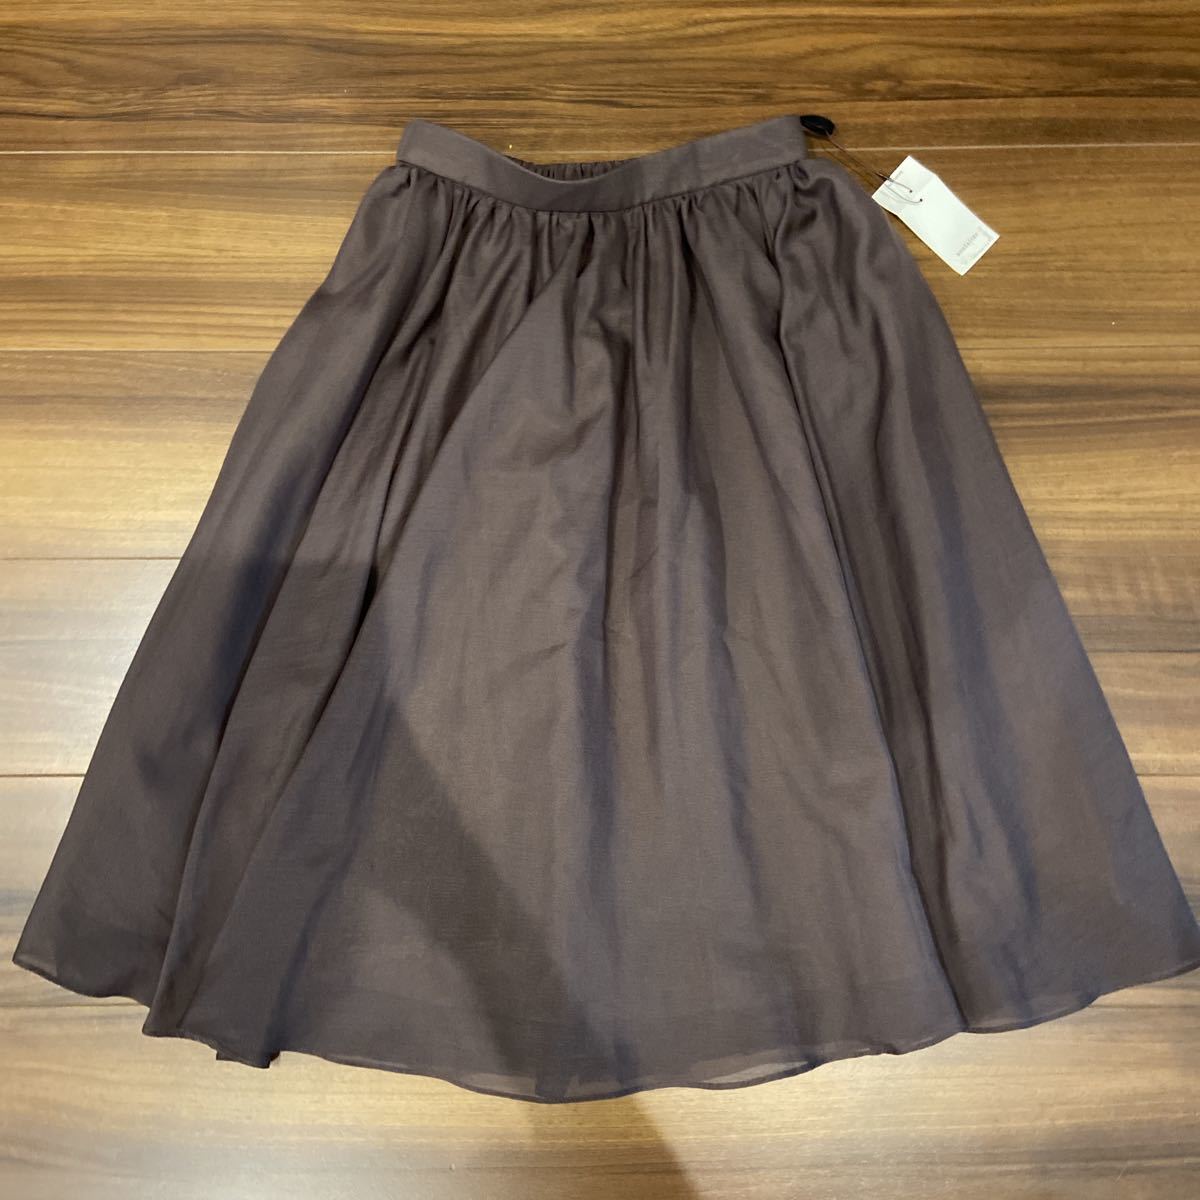  Anatelier skirt light brown group 36 S ( new goods )